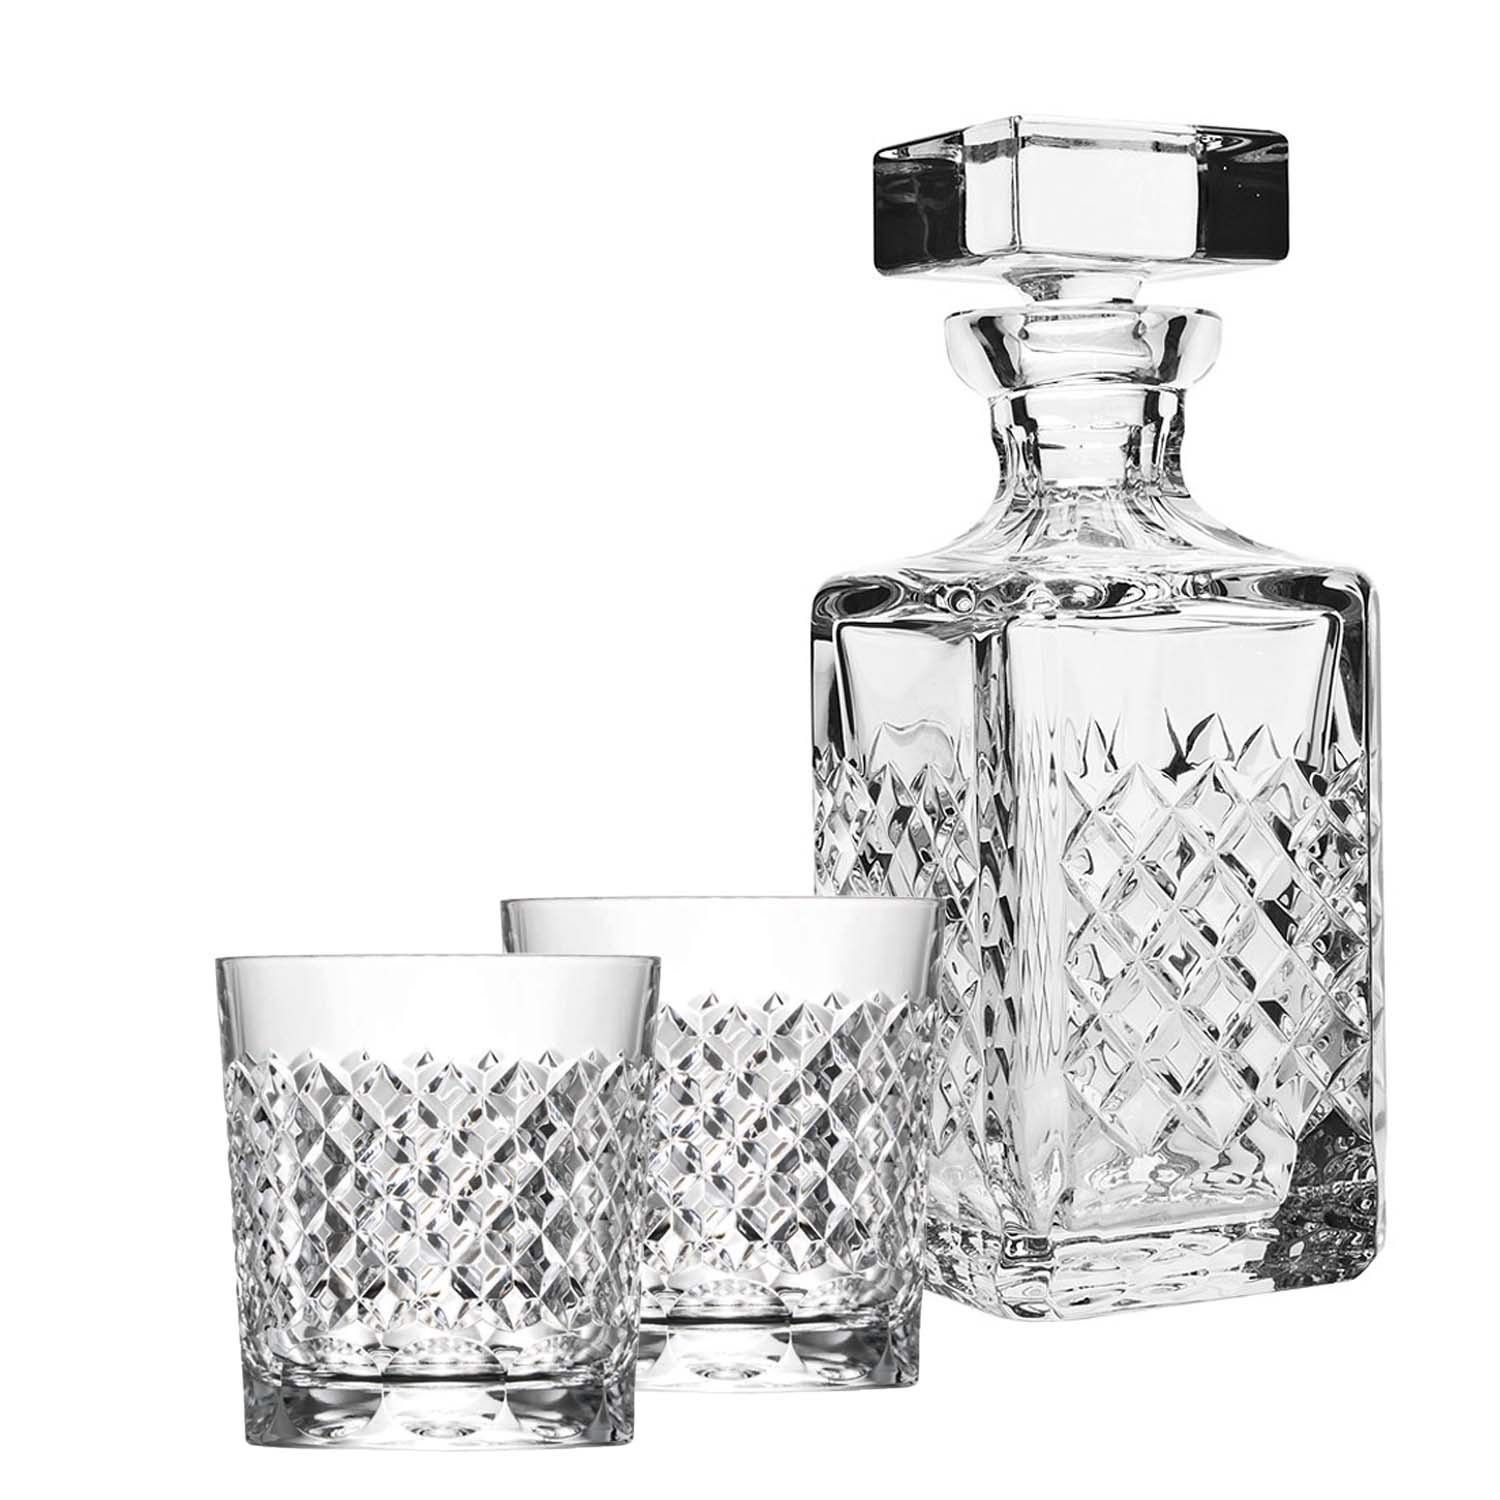 ARNSTADT KRISTALL Karaffe Whisky Geschenk Karo (3-teilig) Kristallglas  mundgeblasen & von Hand geschliffen